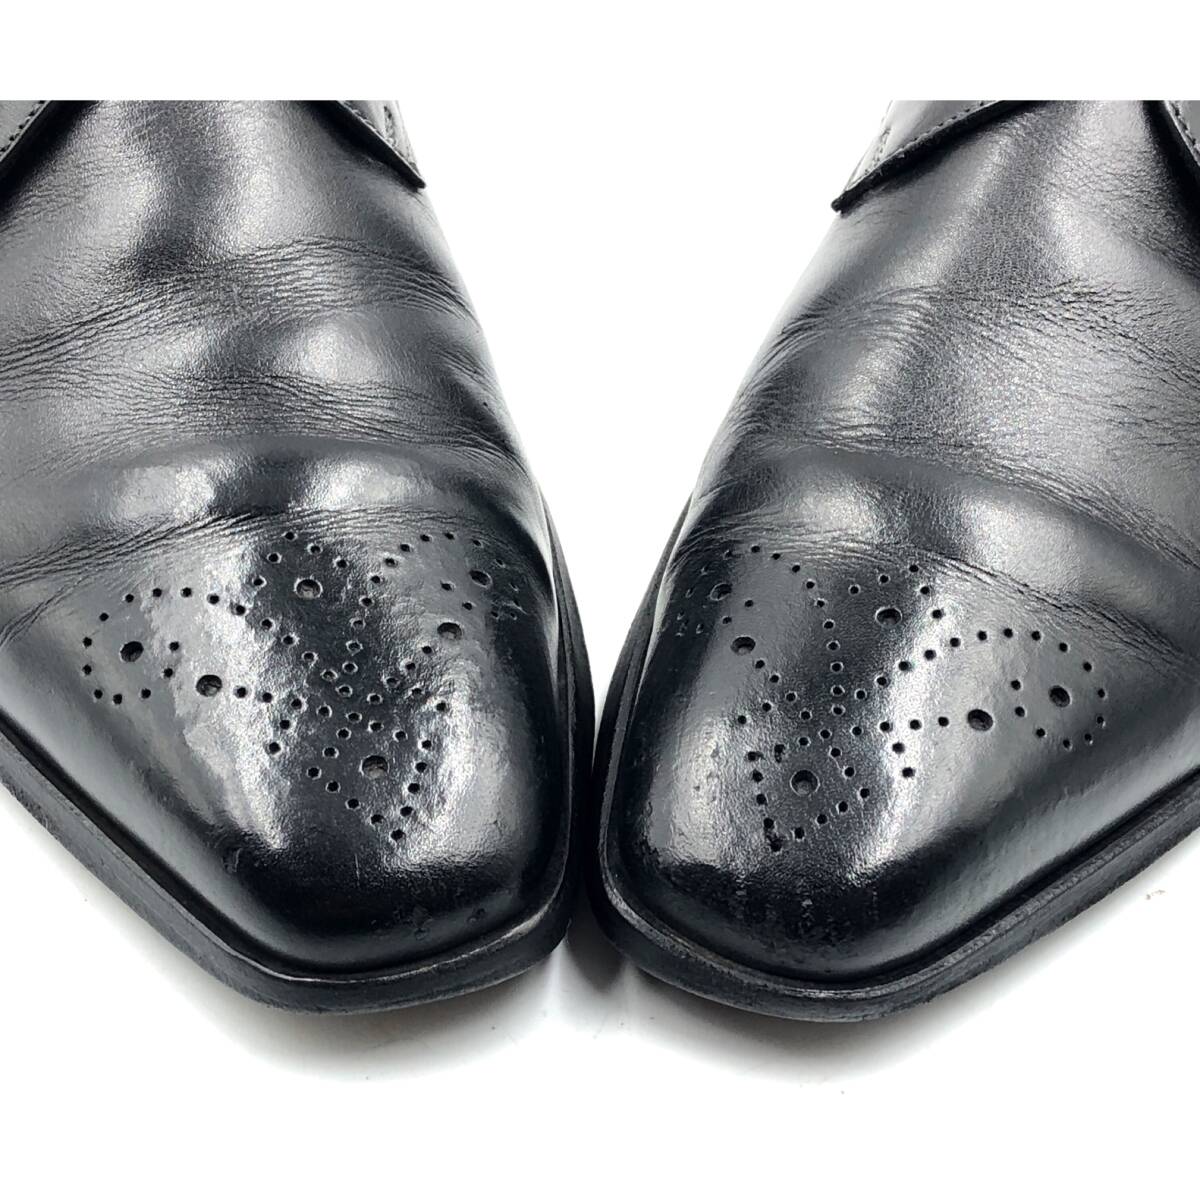 即決 SANTONI サントーニ 24.5cm 6.5 9098 メンズ レザーシューズ プレーントゥ 外羽根 黒 ブラック 革靴 皮靴 ビジネスシューズ